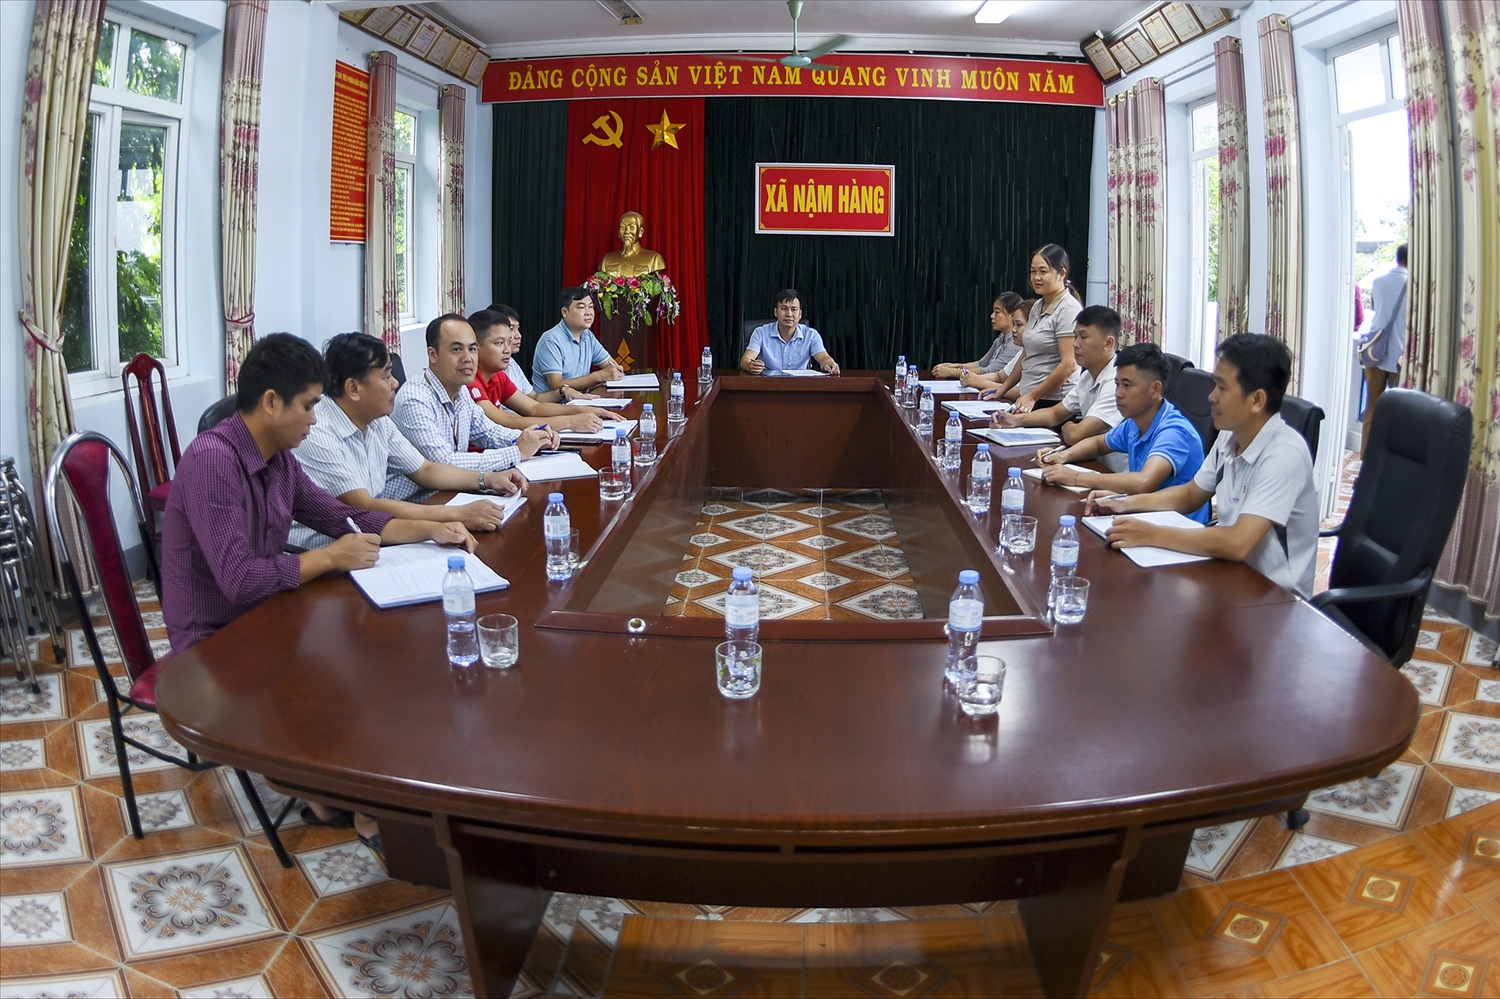 Nữ cán bộ tại xã Nậm Hàng, huyện Nậm Nhùn có những đóng góp ý kiến, đề xuất trong các buổi họp của Đảng bộ, UBND xã Nậm Hàng.